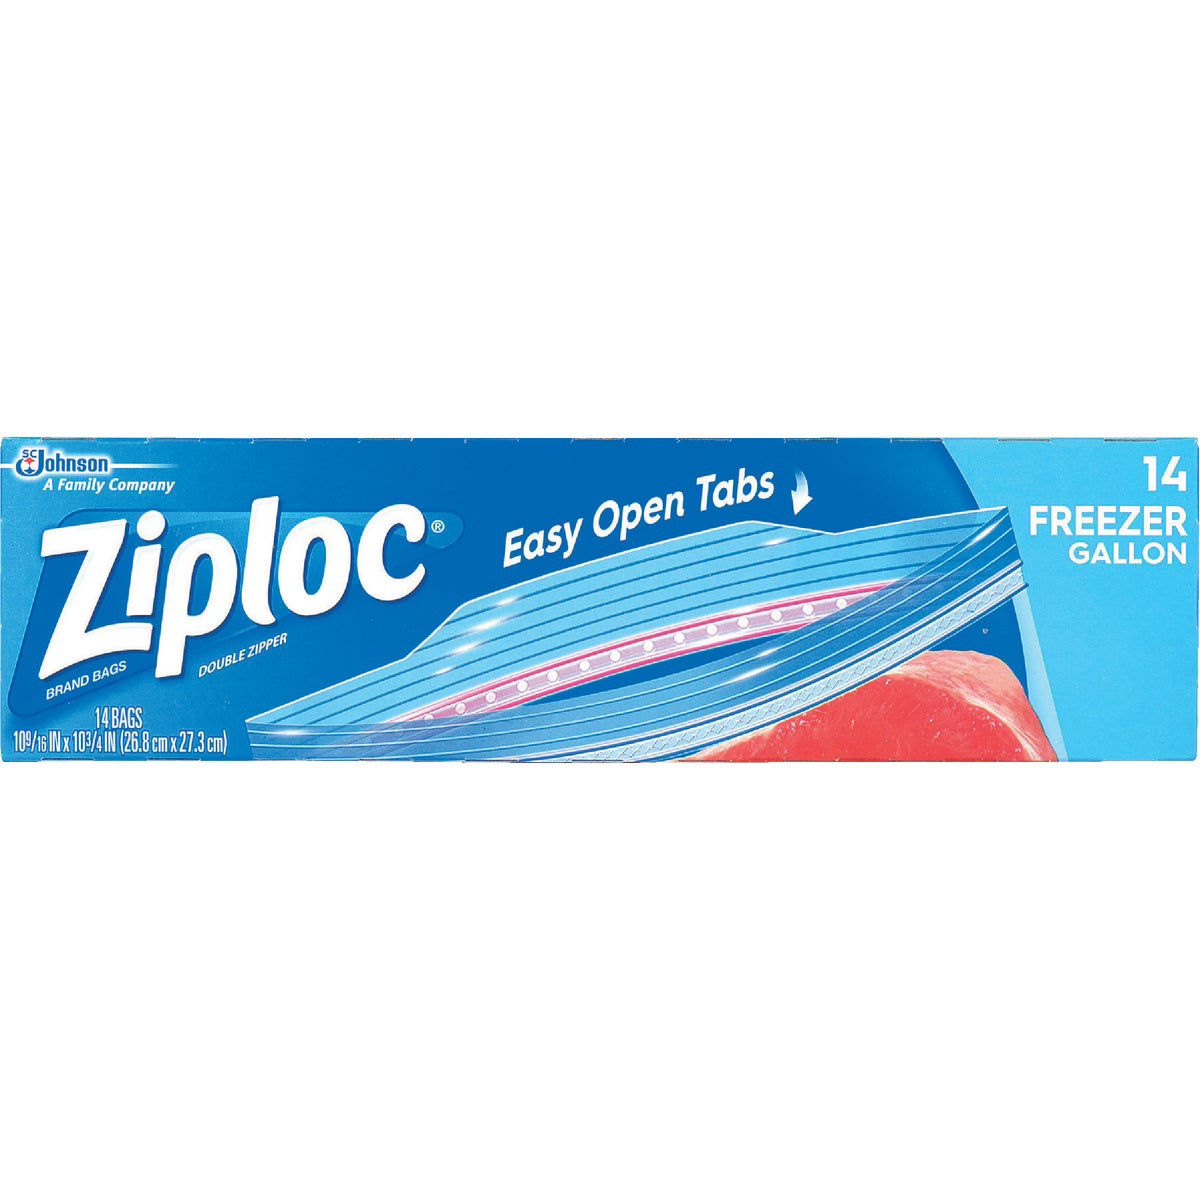 Ziploc 1 Gal. Double Zipper Freezer Bag (14-Count)